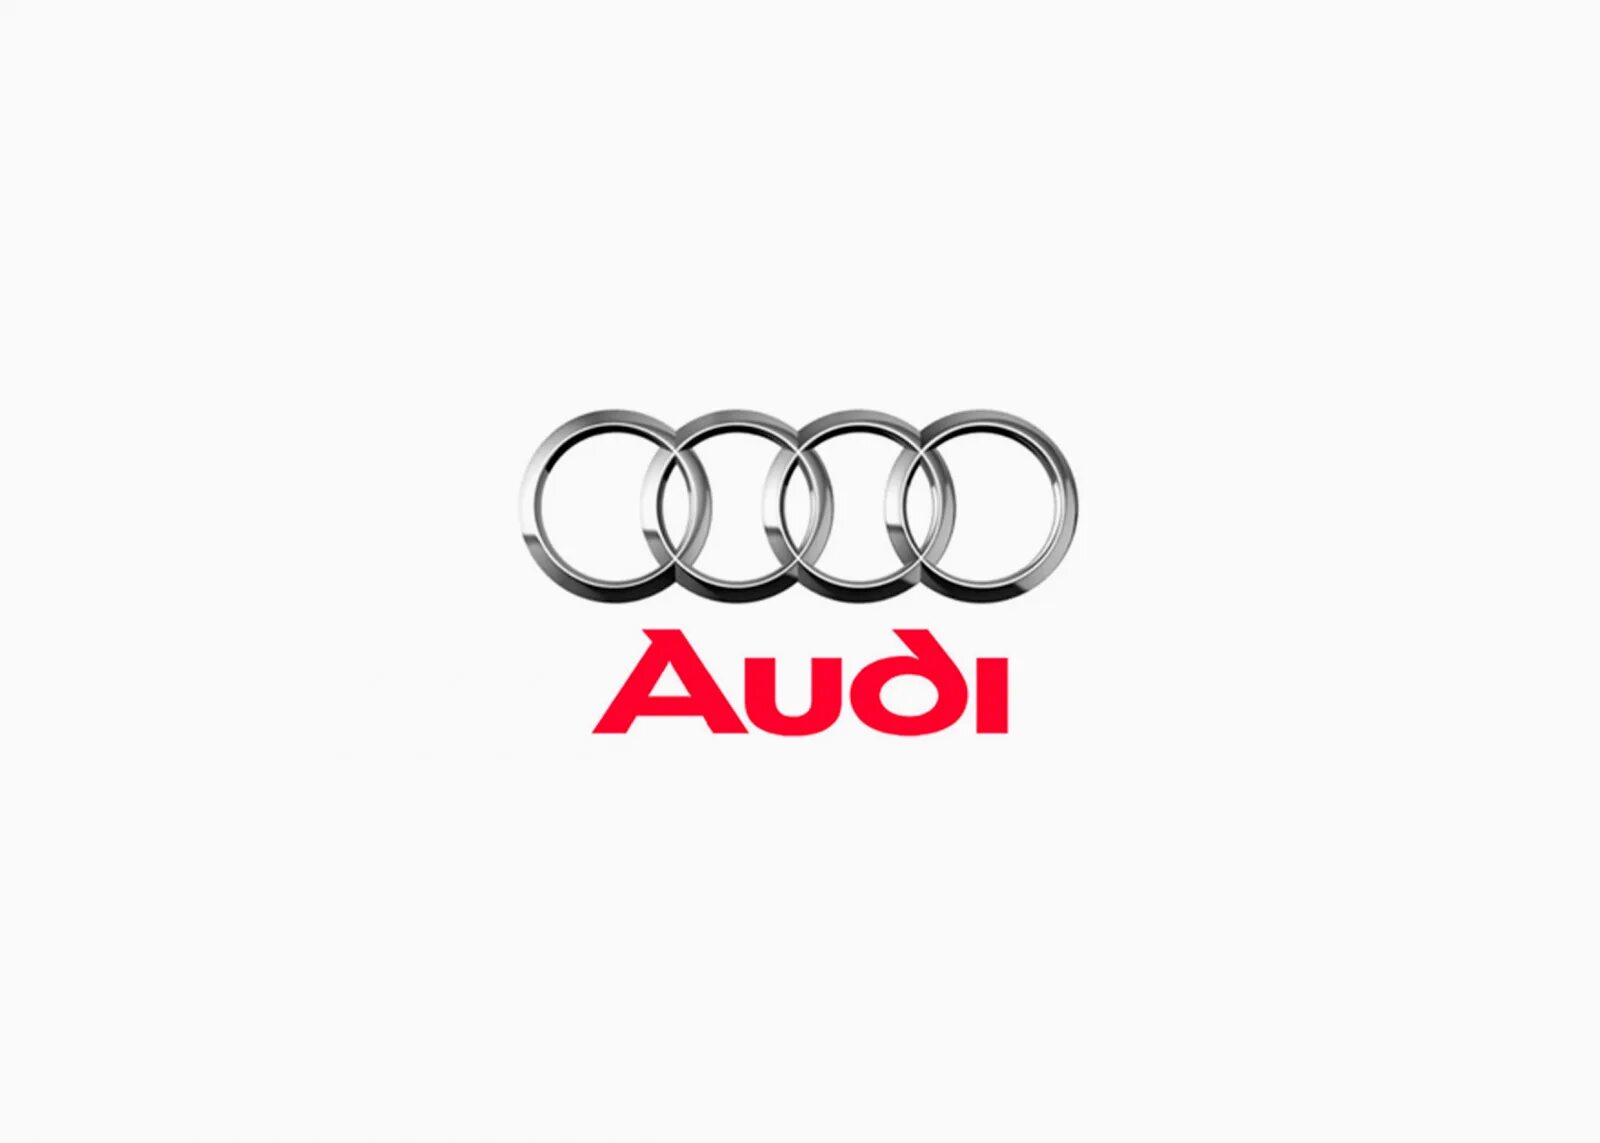 История эмблемы Ауди. Audi a6 логотип. Первая эмблема Ауди. Эволюция логотипа Audi.